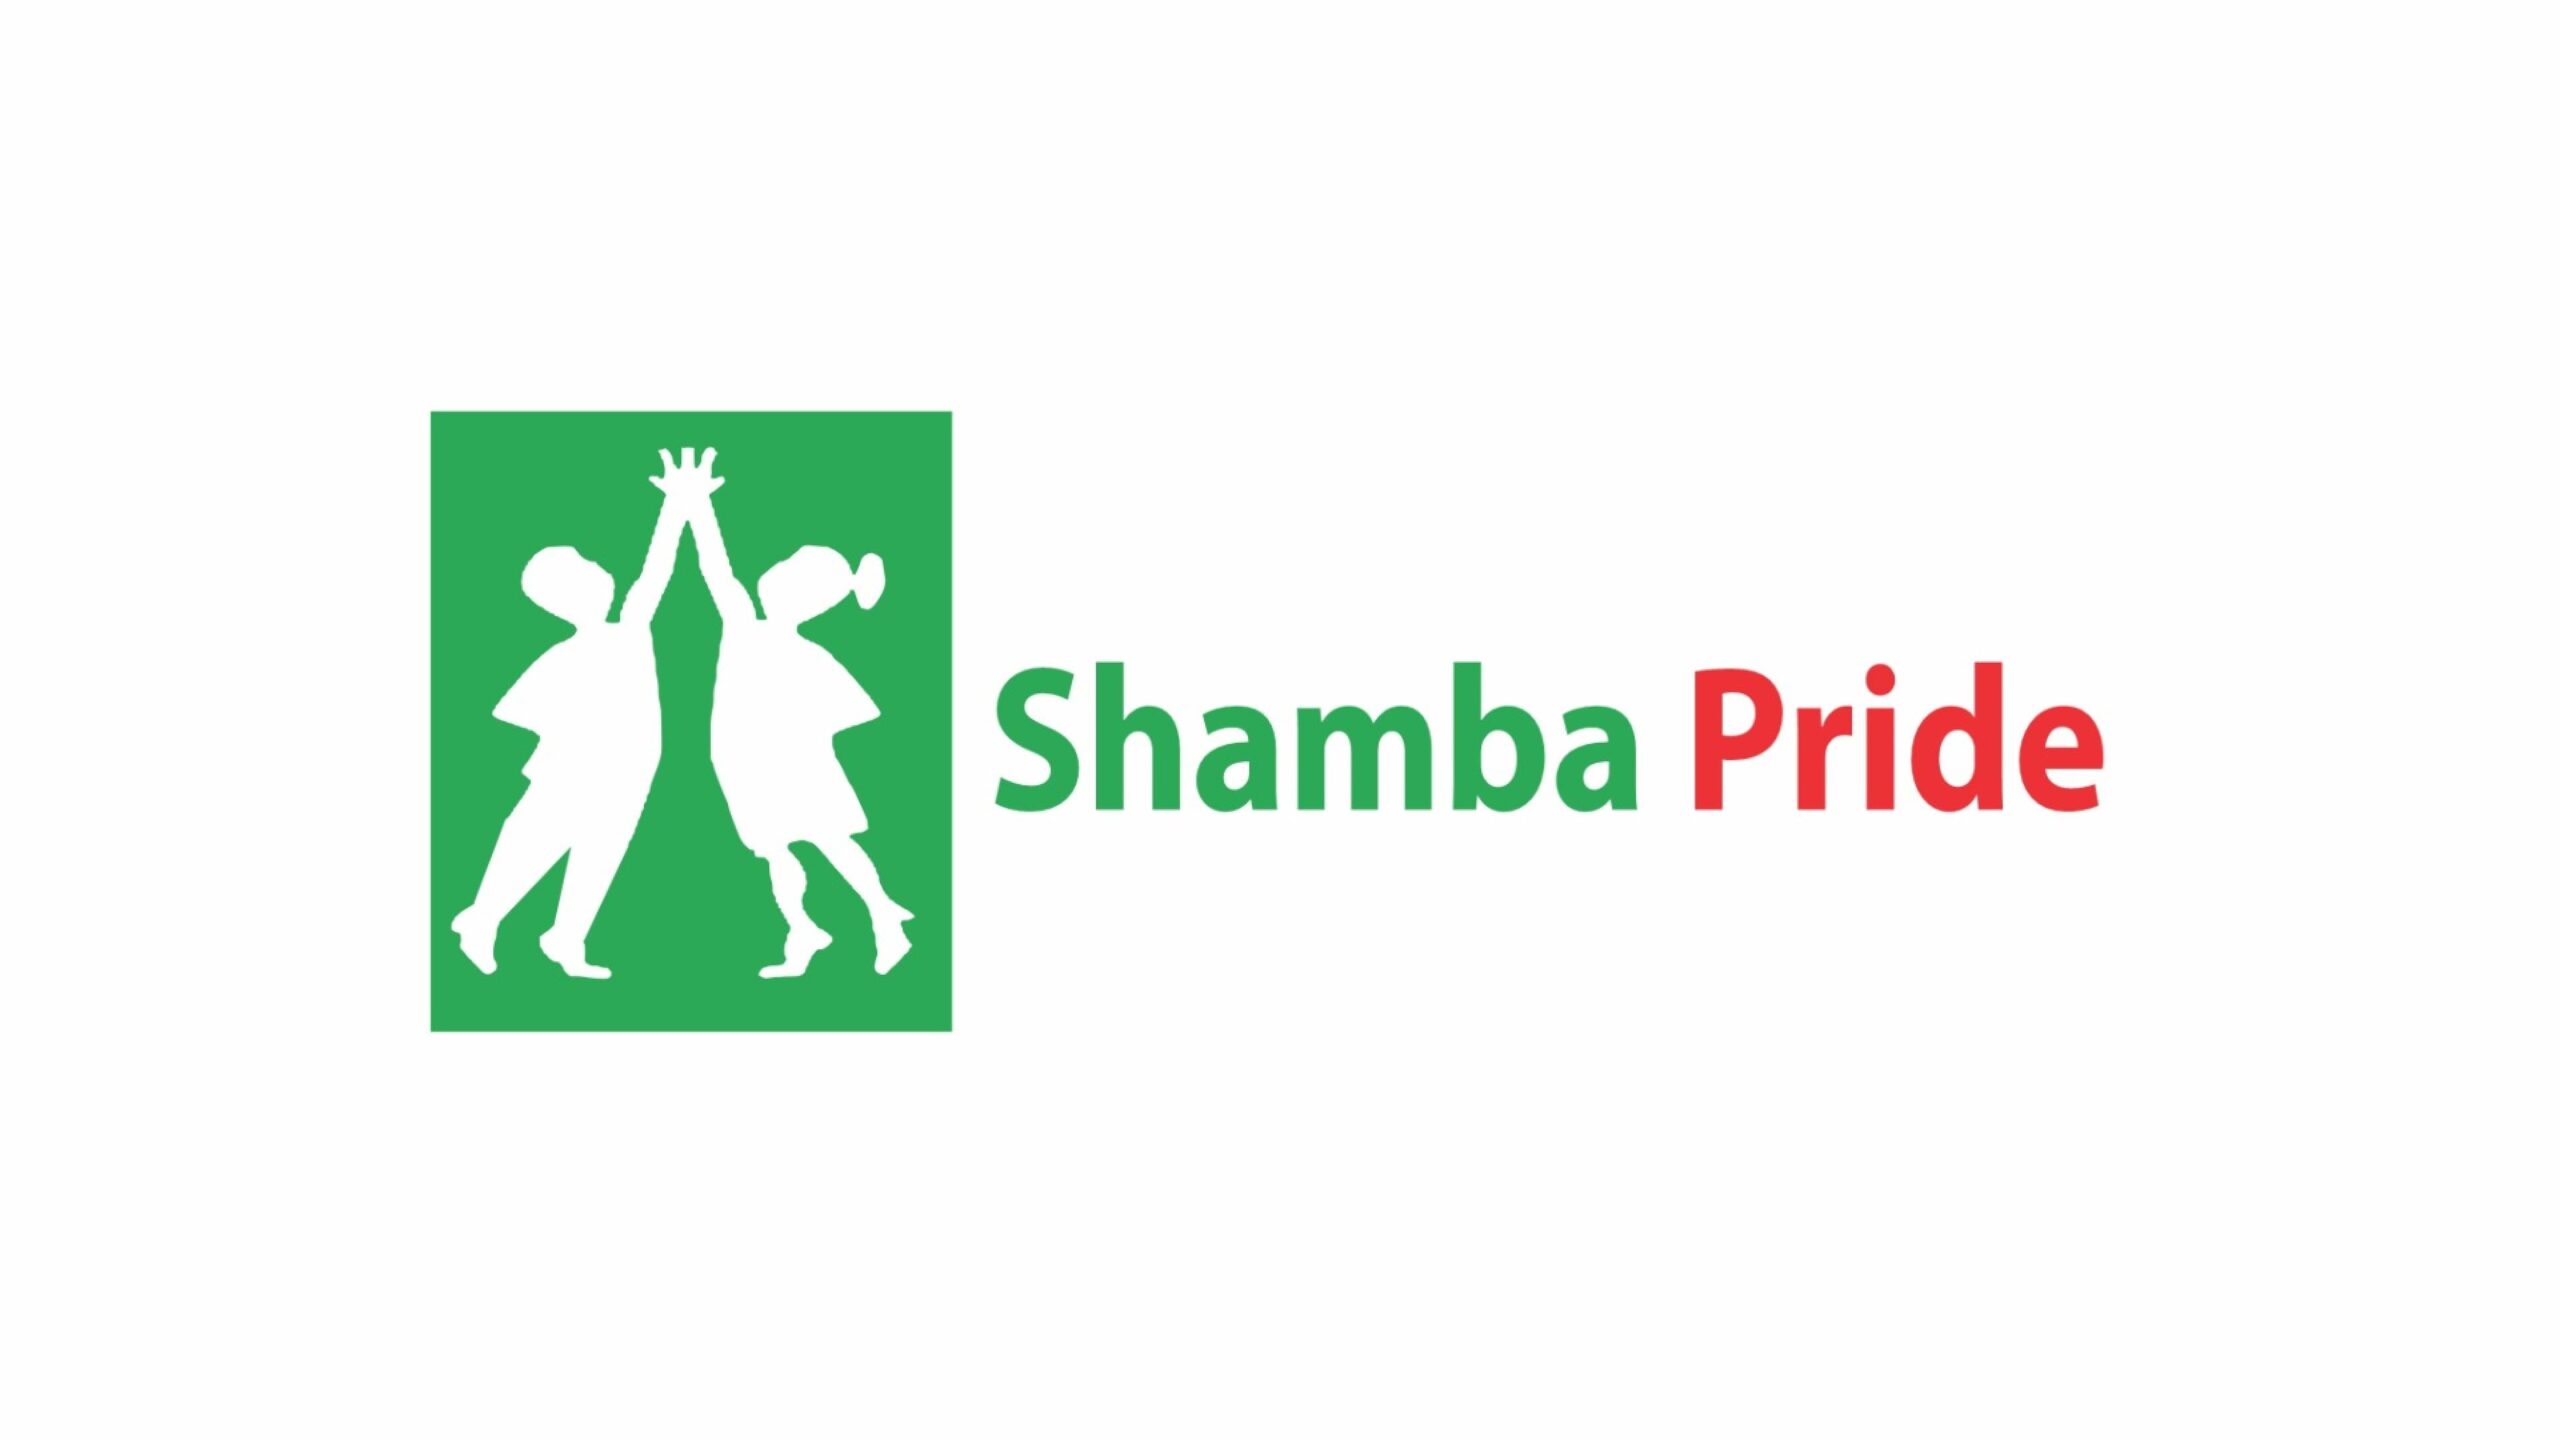 ケニアのアグテック企業Shamba Pride、加盟店ネットワーク拡大のため370万ドルを調達